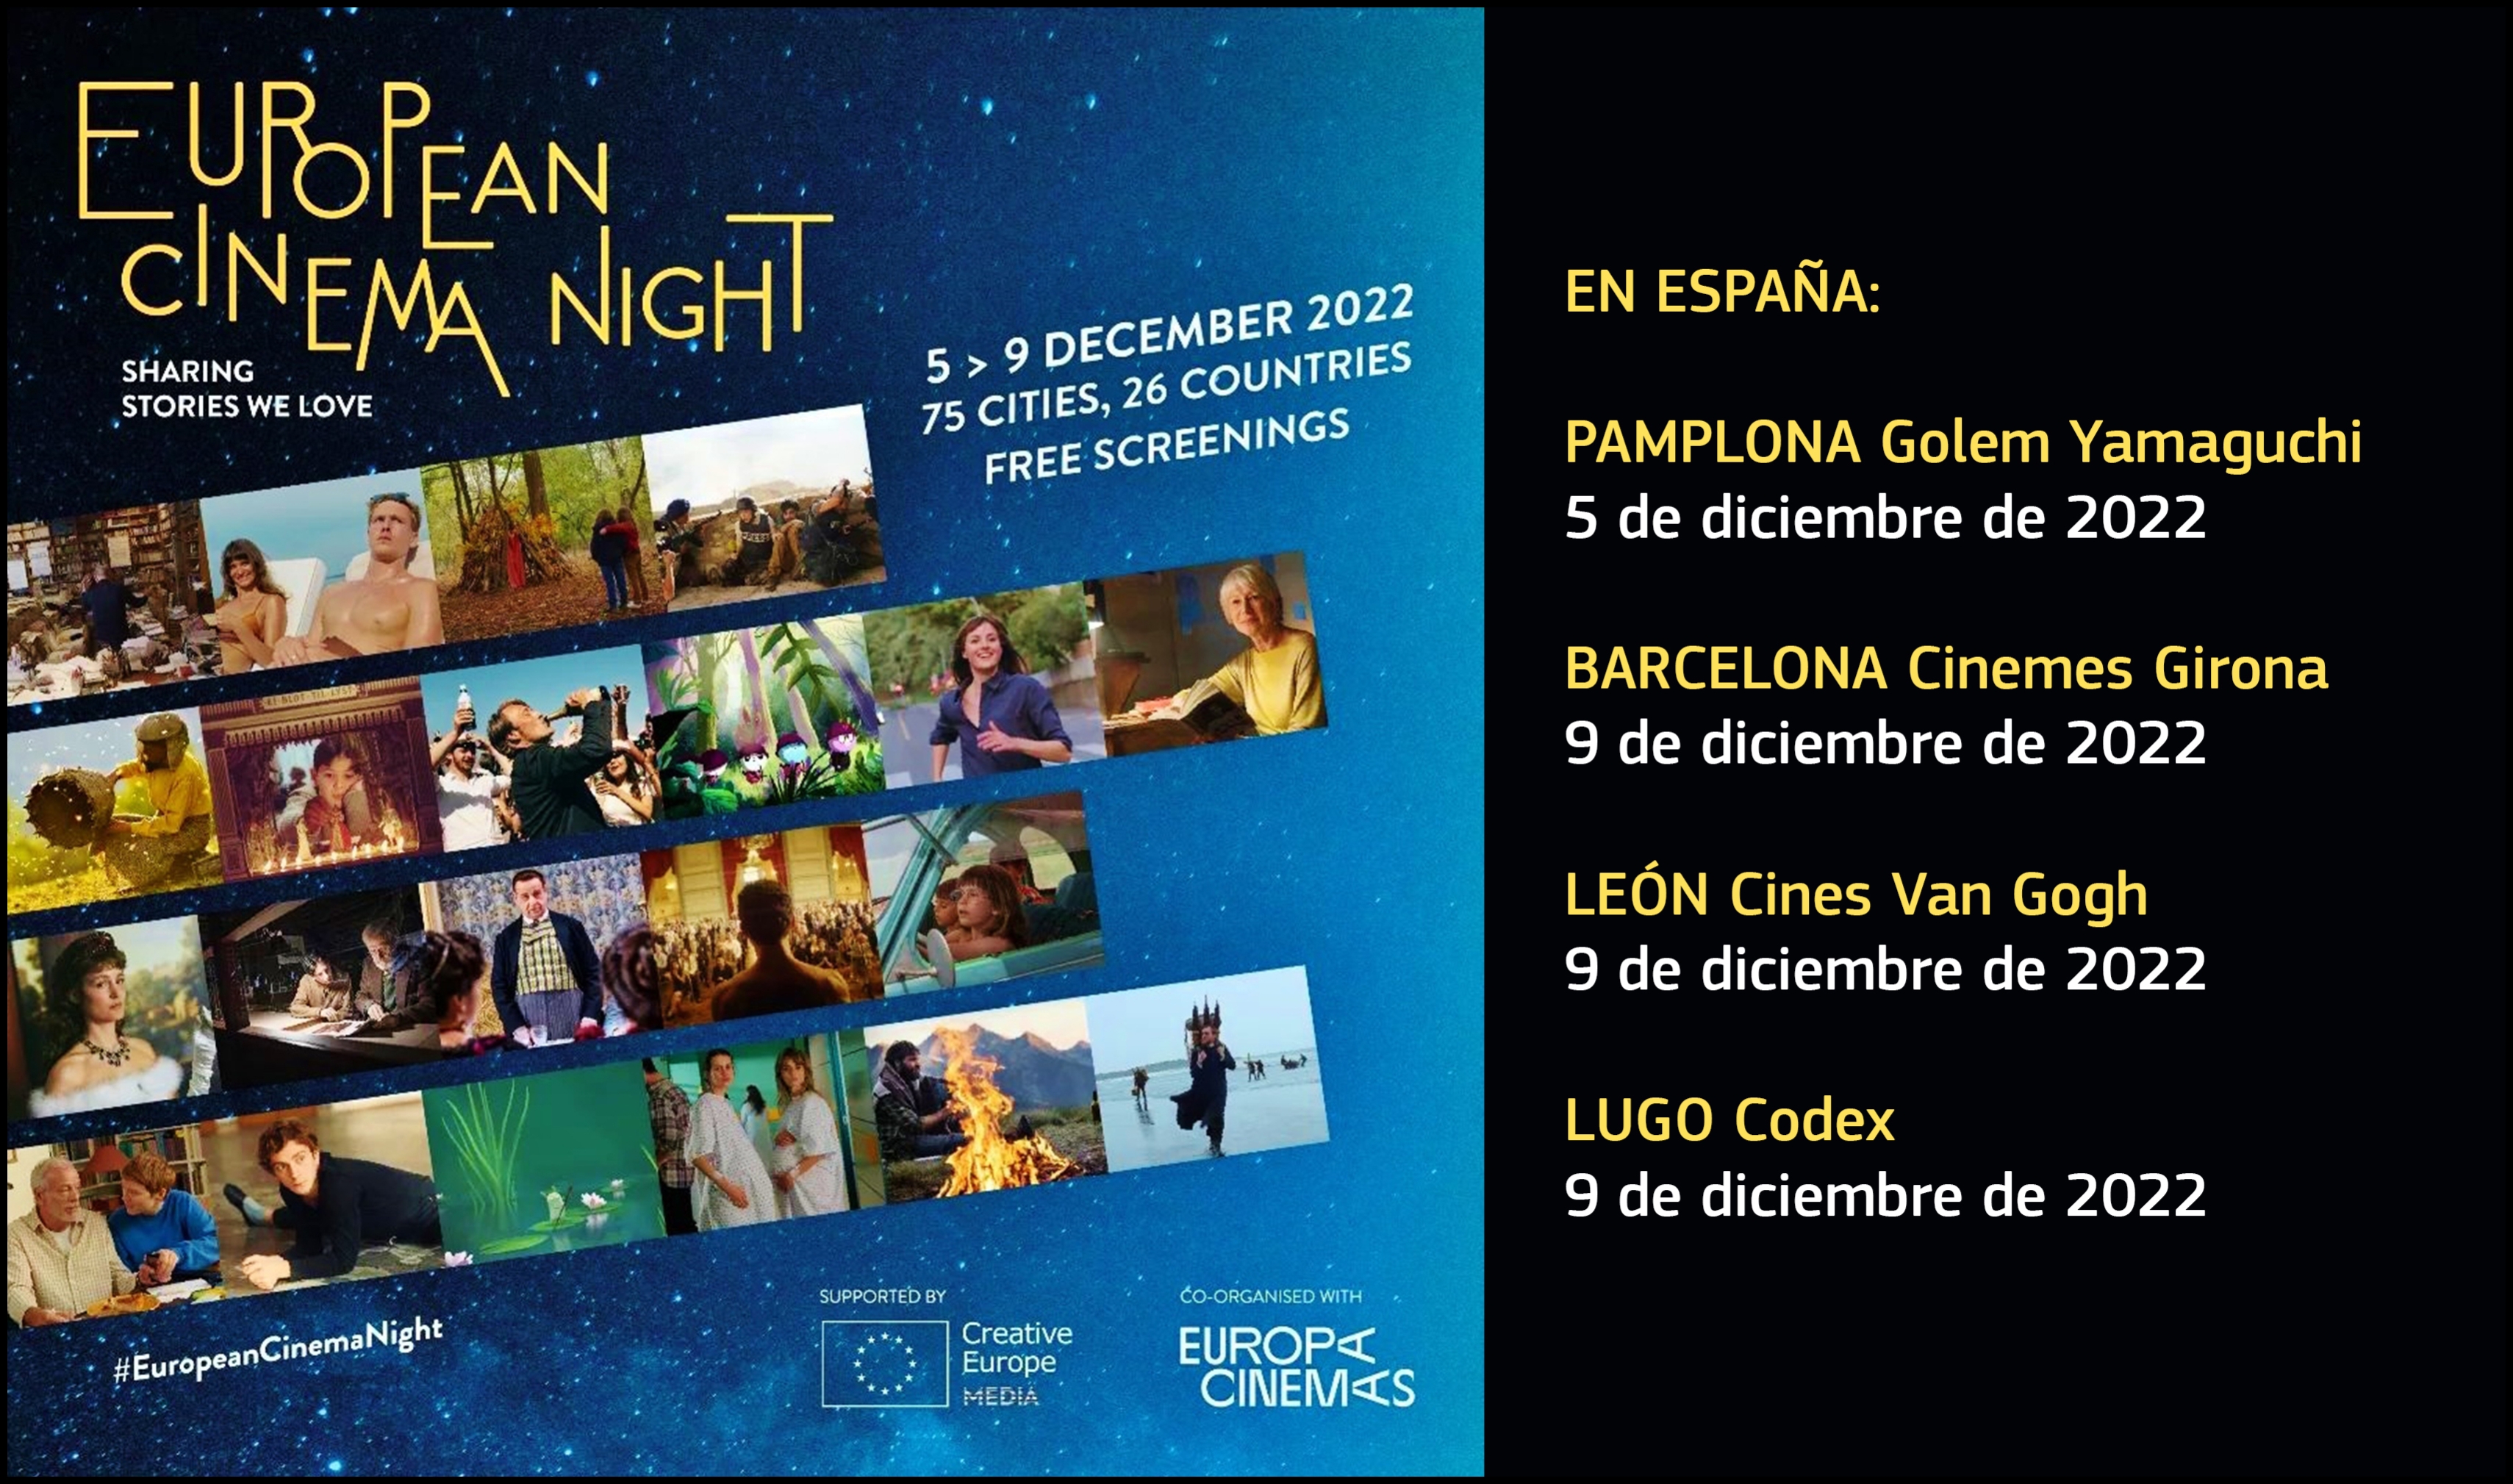 EUROPEAN CINEMA NIGHT 2022: Ciudades españolas y películas europeas en esta edición